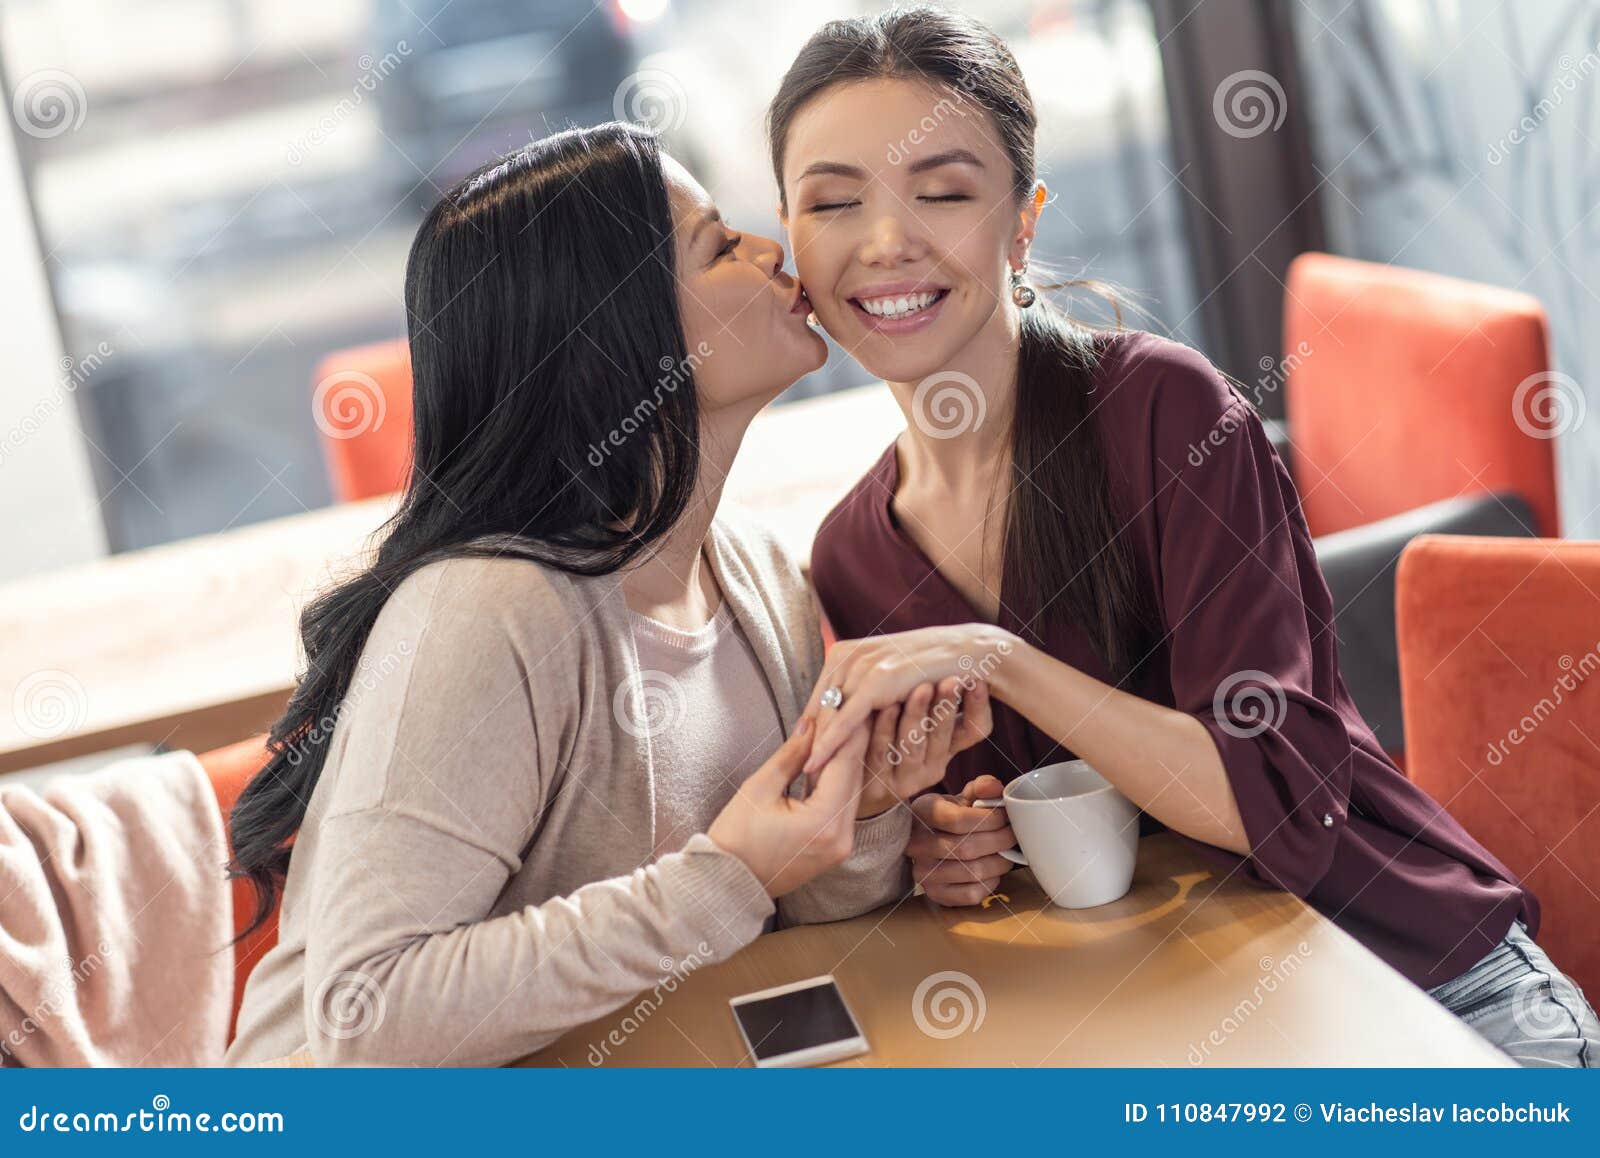 Kissing young women 